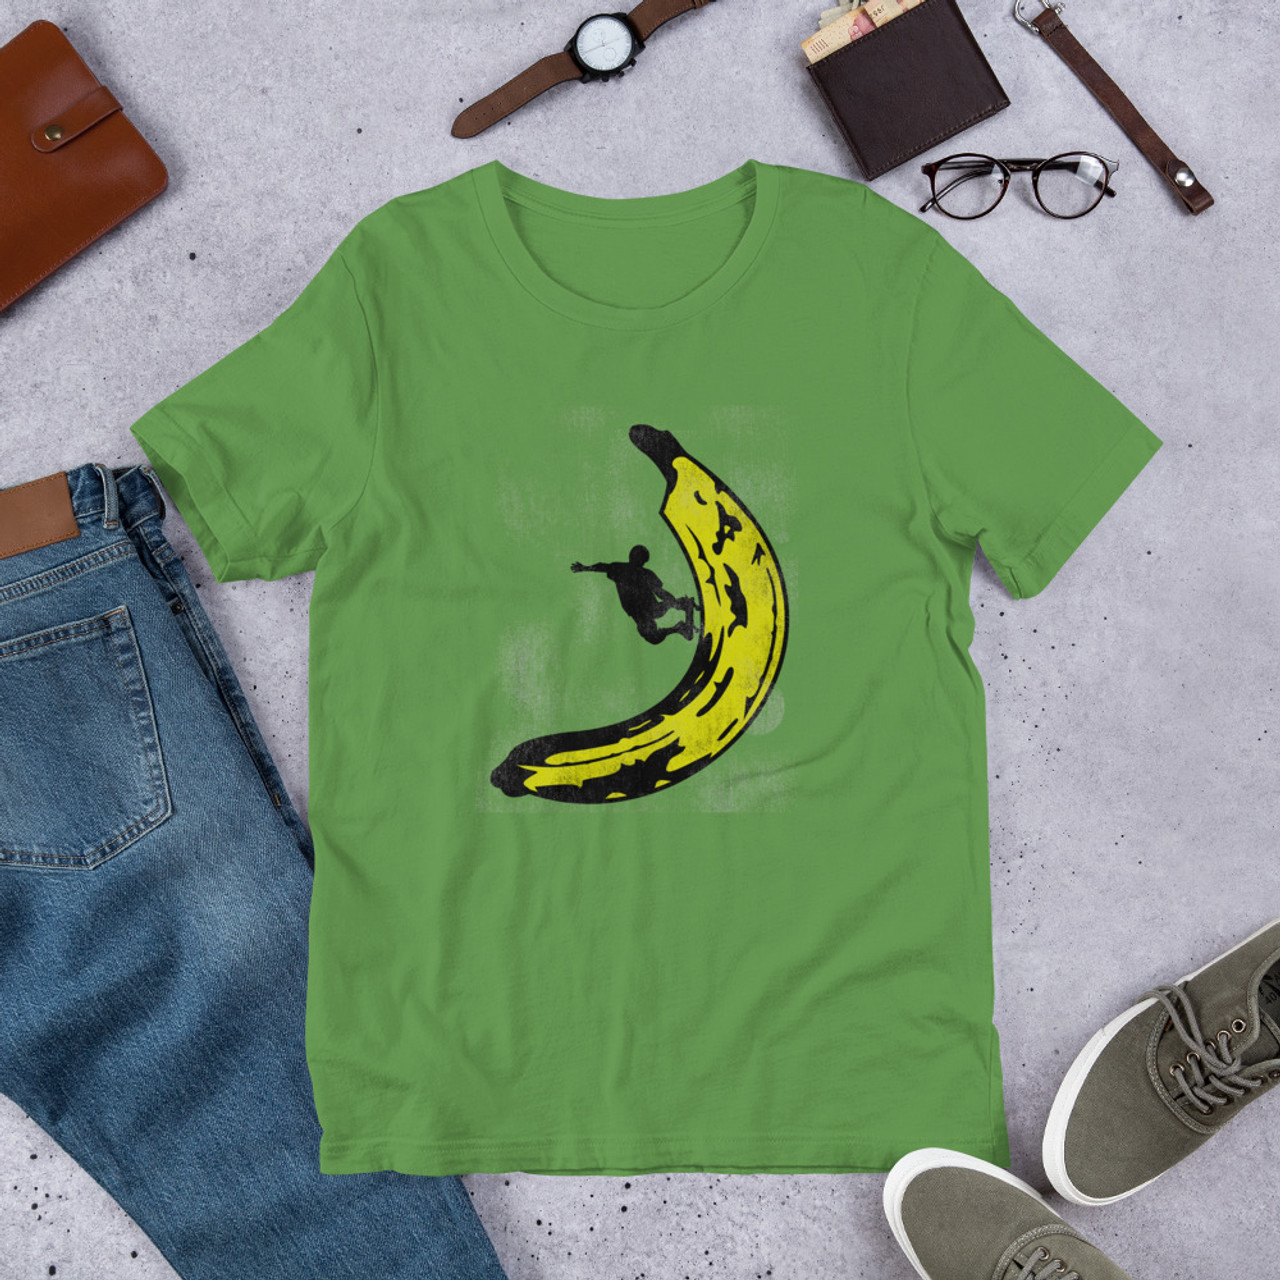 Leaf T-Shirt - Bella + Canvas 3001 Banana Skateboard